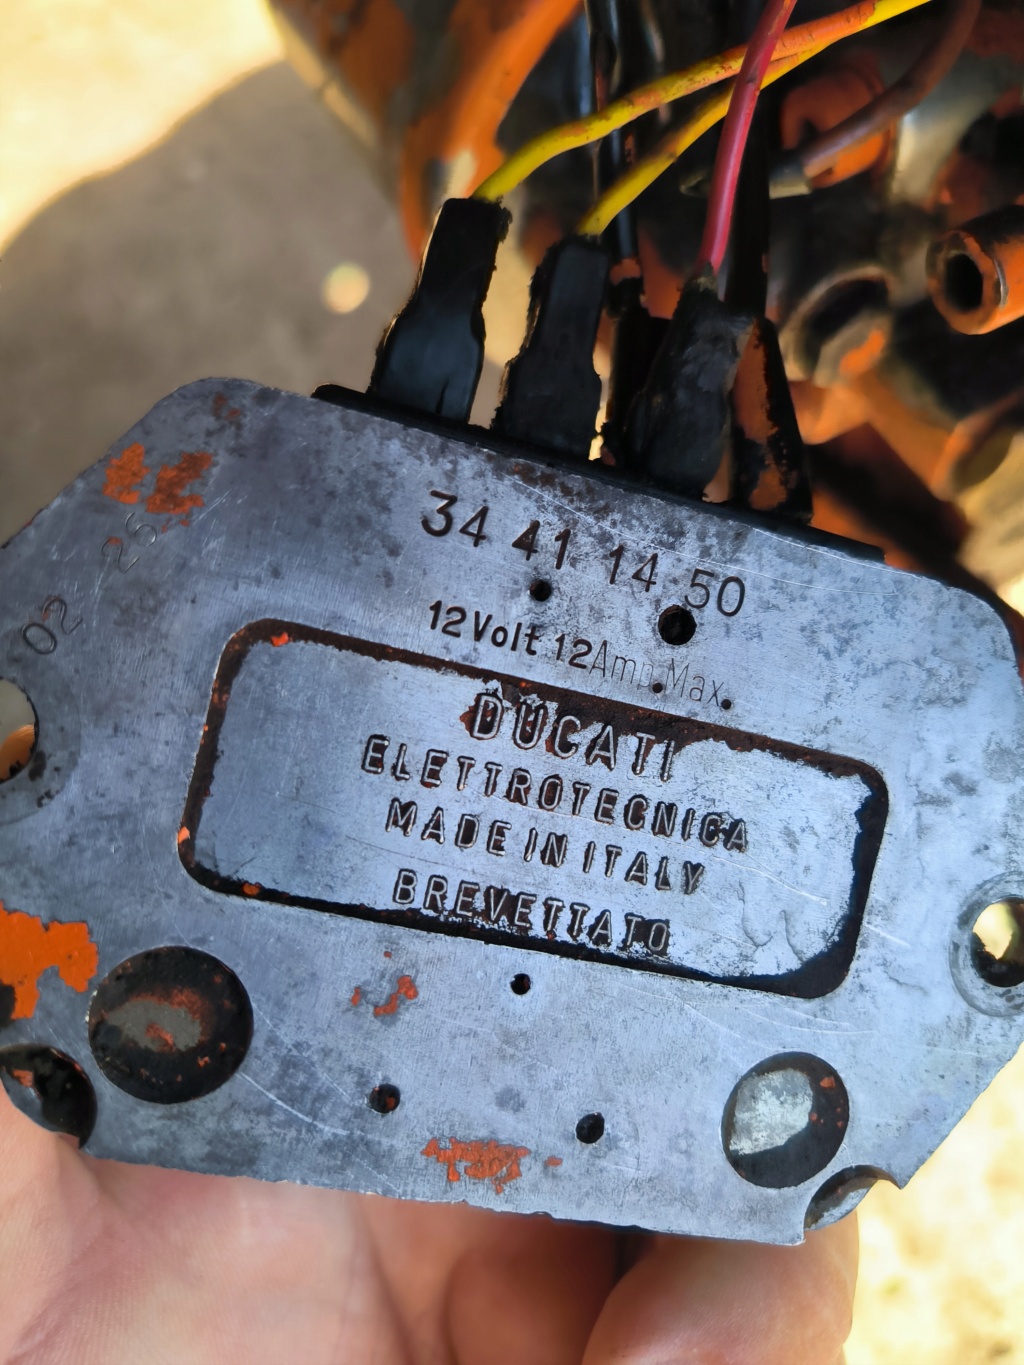 [Pasquali 995] Problemas de carga de la batería: regulador Ducati Img_2028